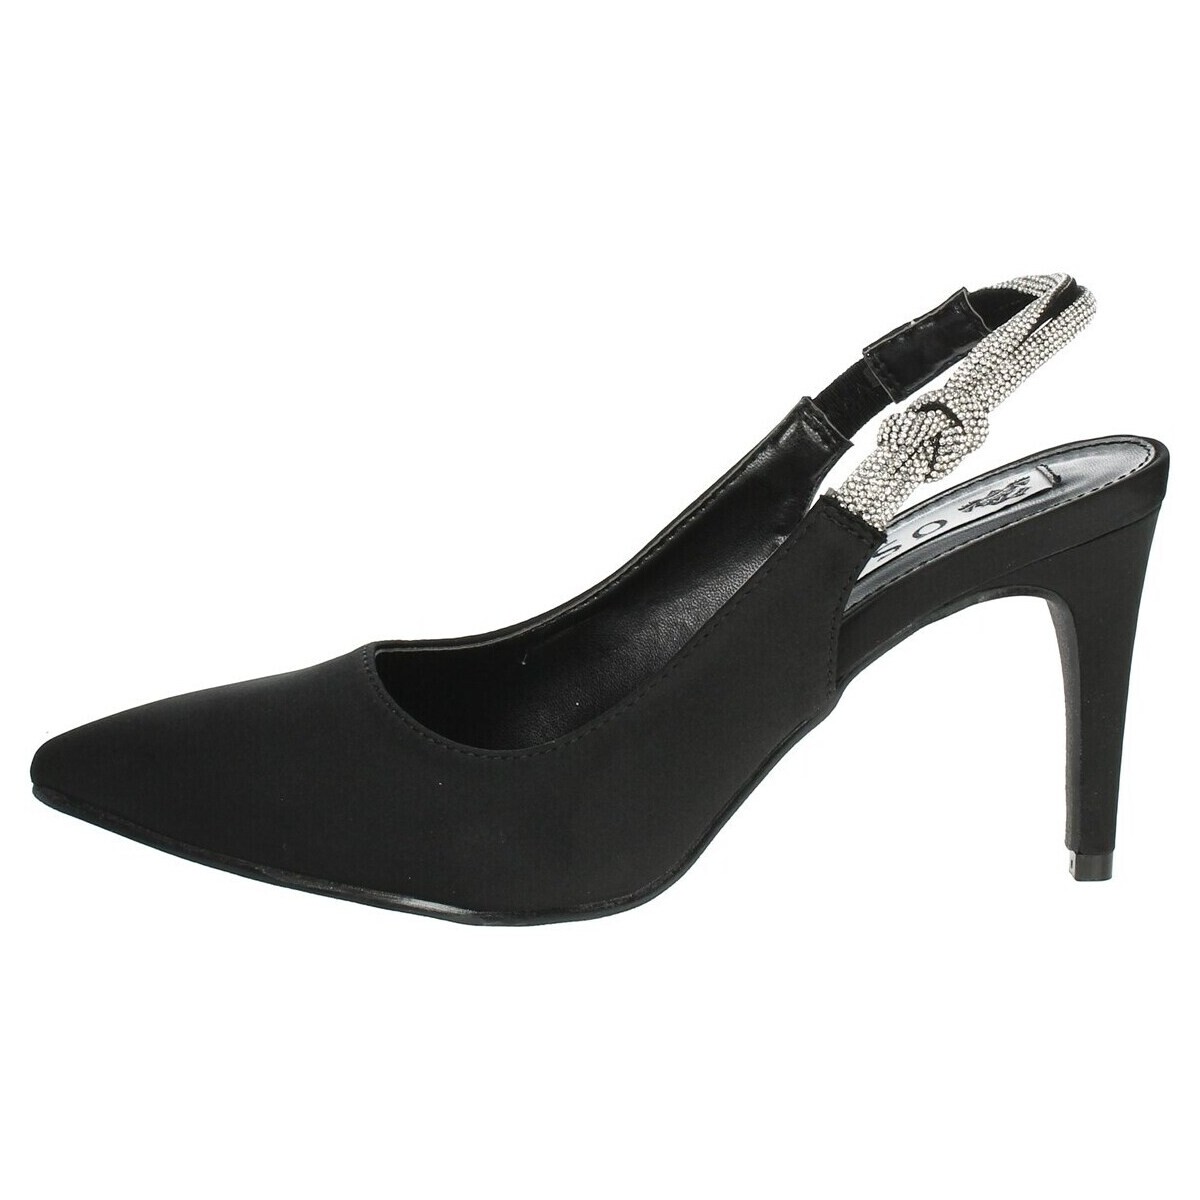 Chaussures Femme Escarpins Osey SCCH0005 Noir